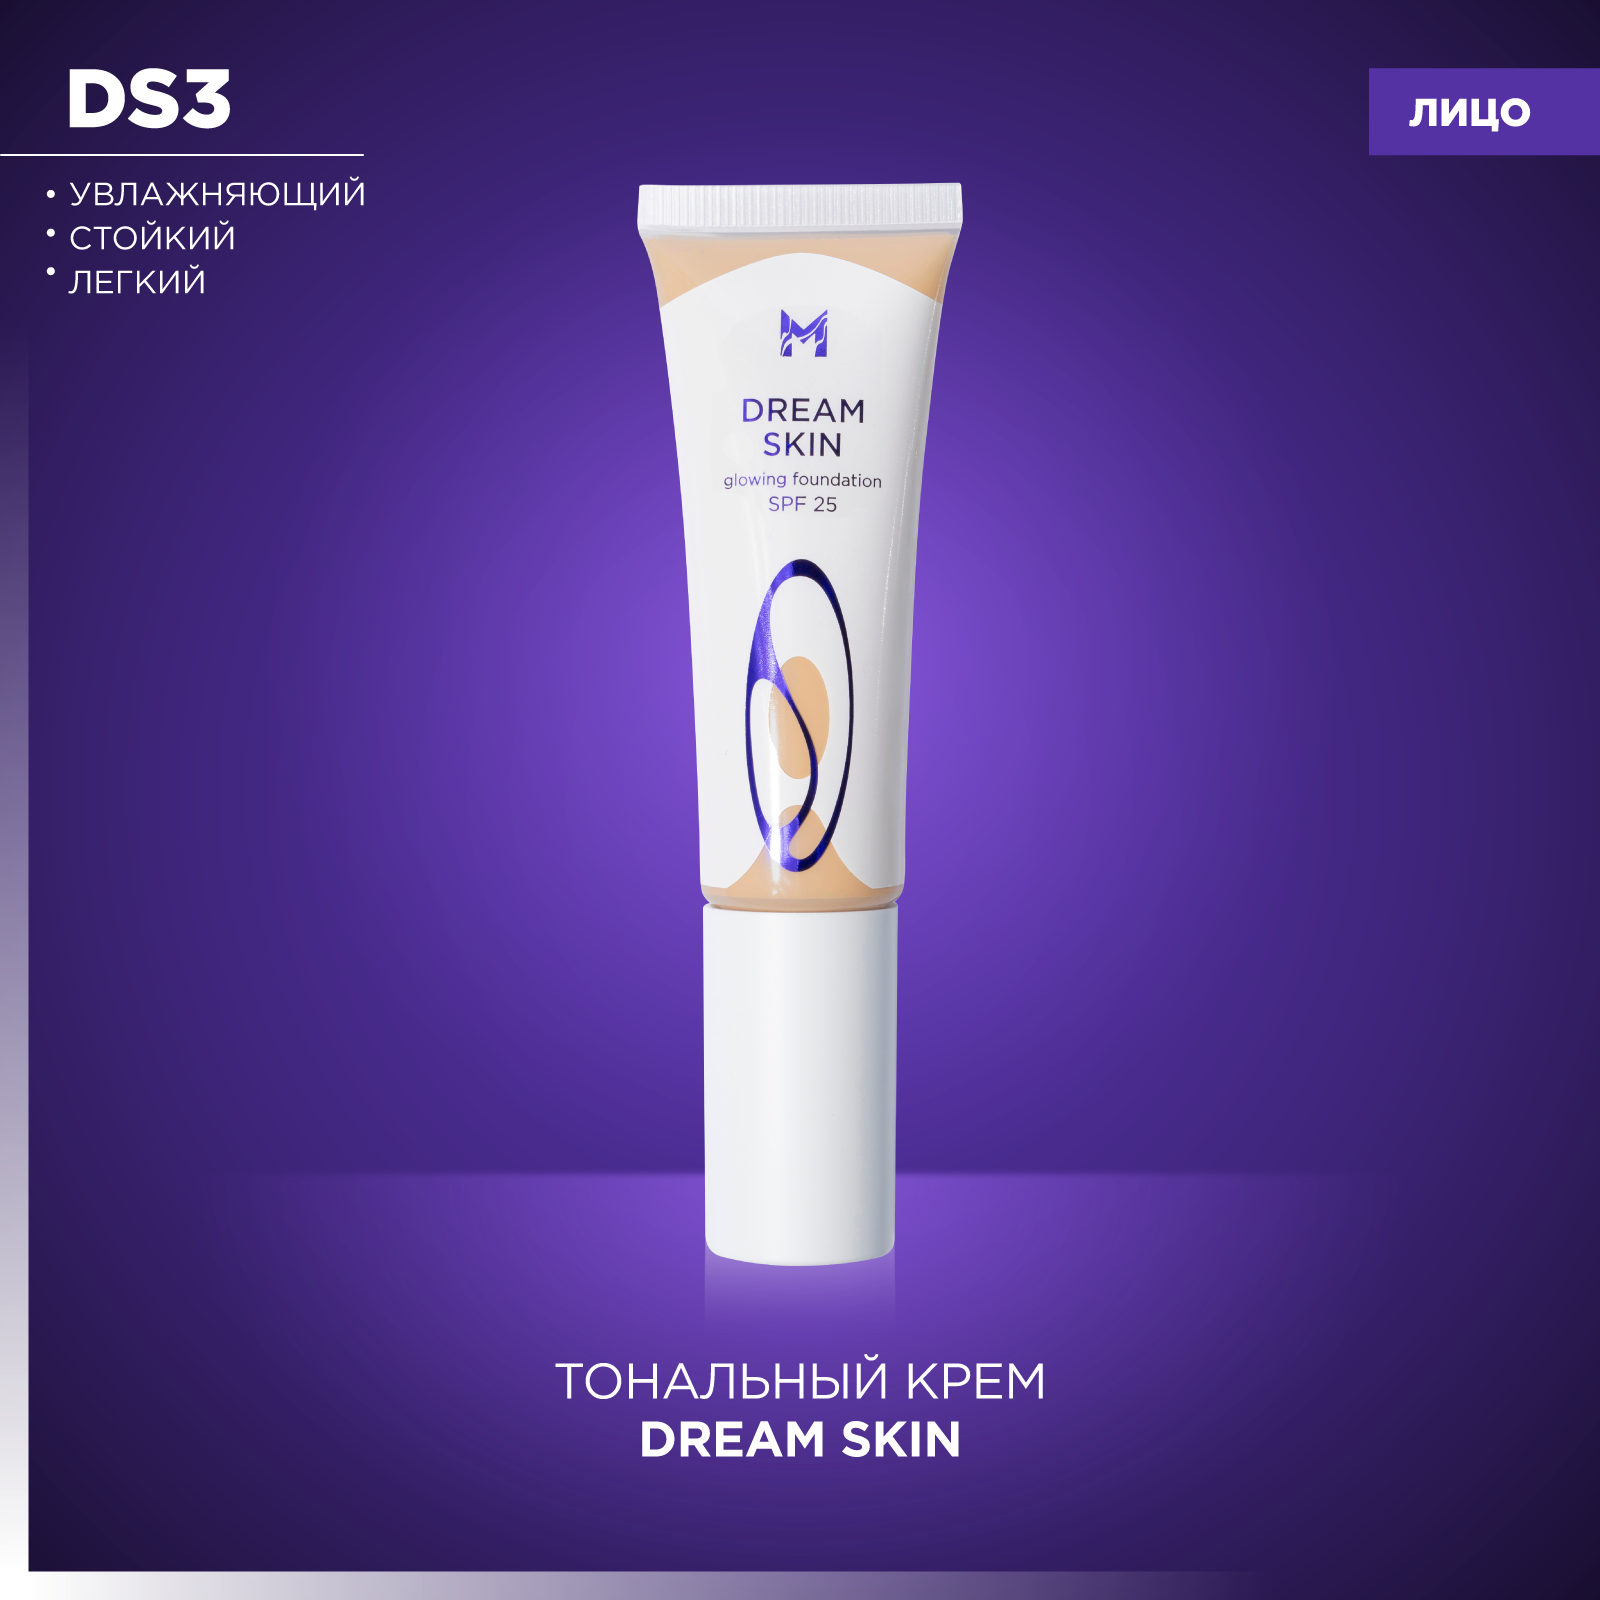 Тональный крем Dream Skin Кожа мечты Manly PRO DS3